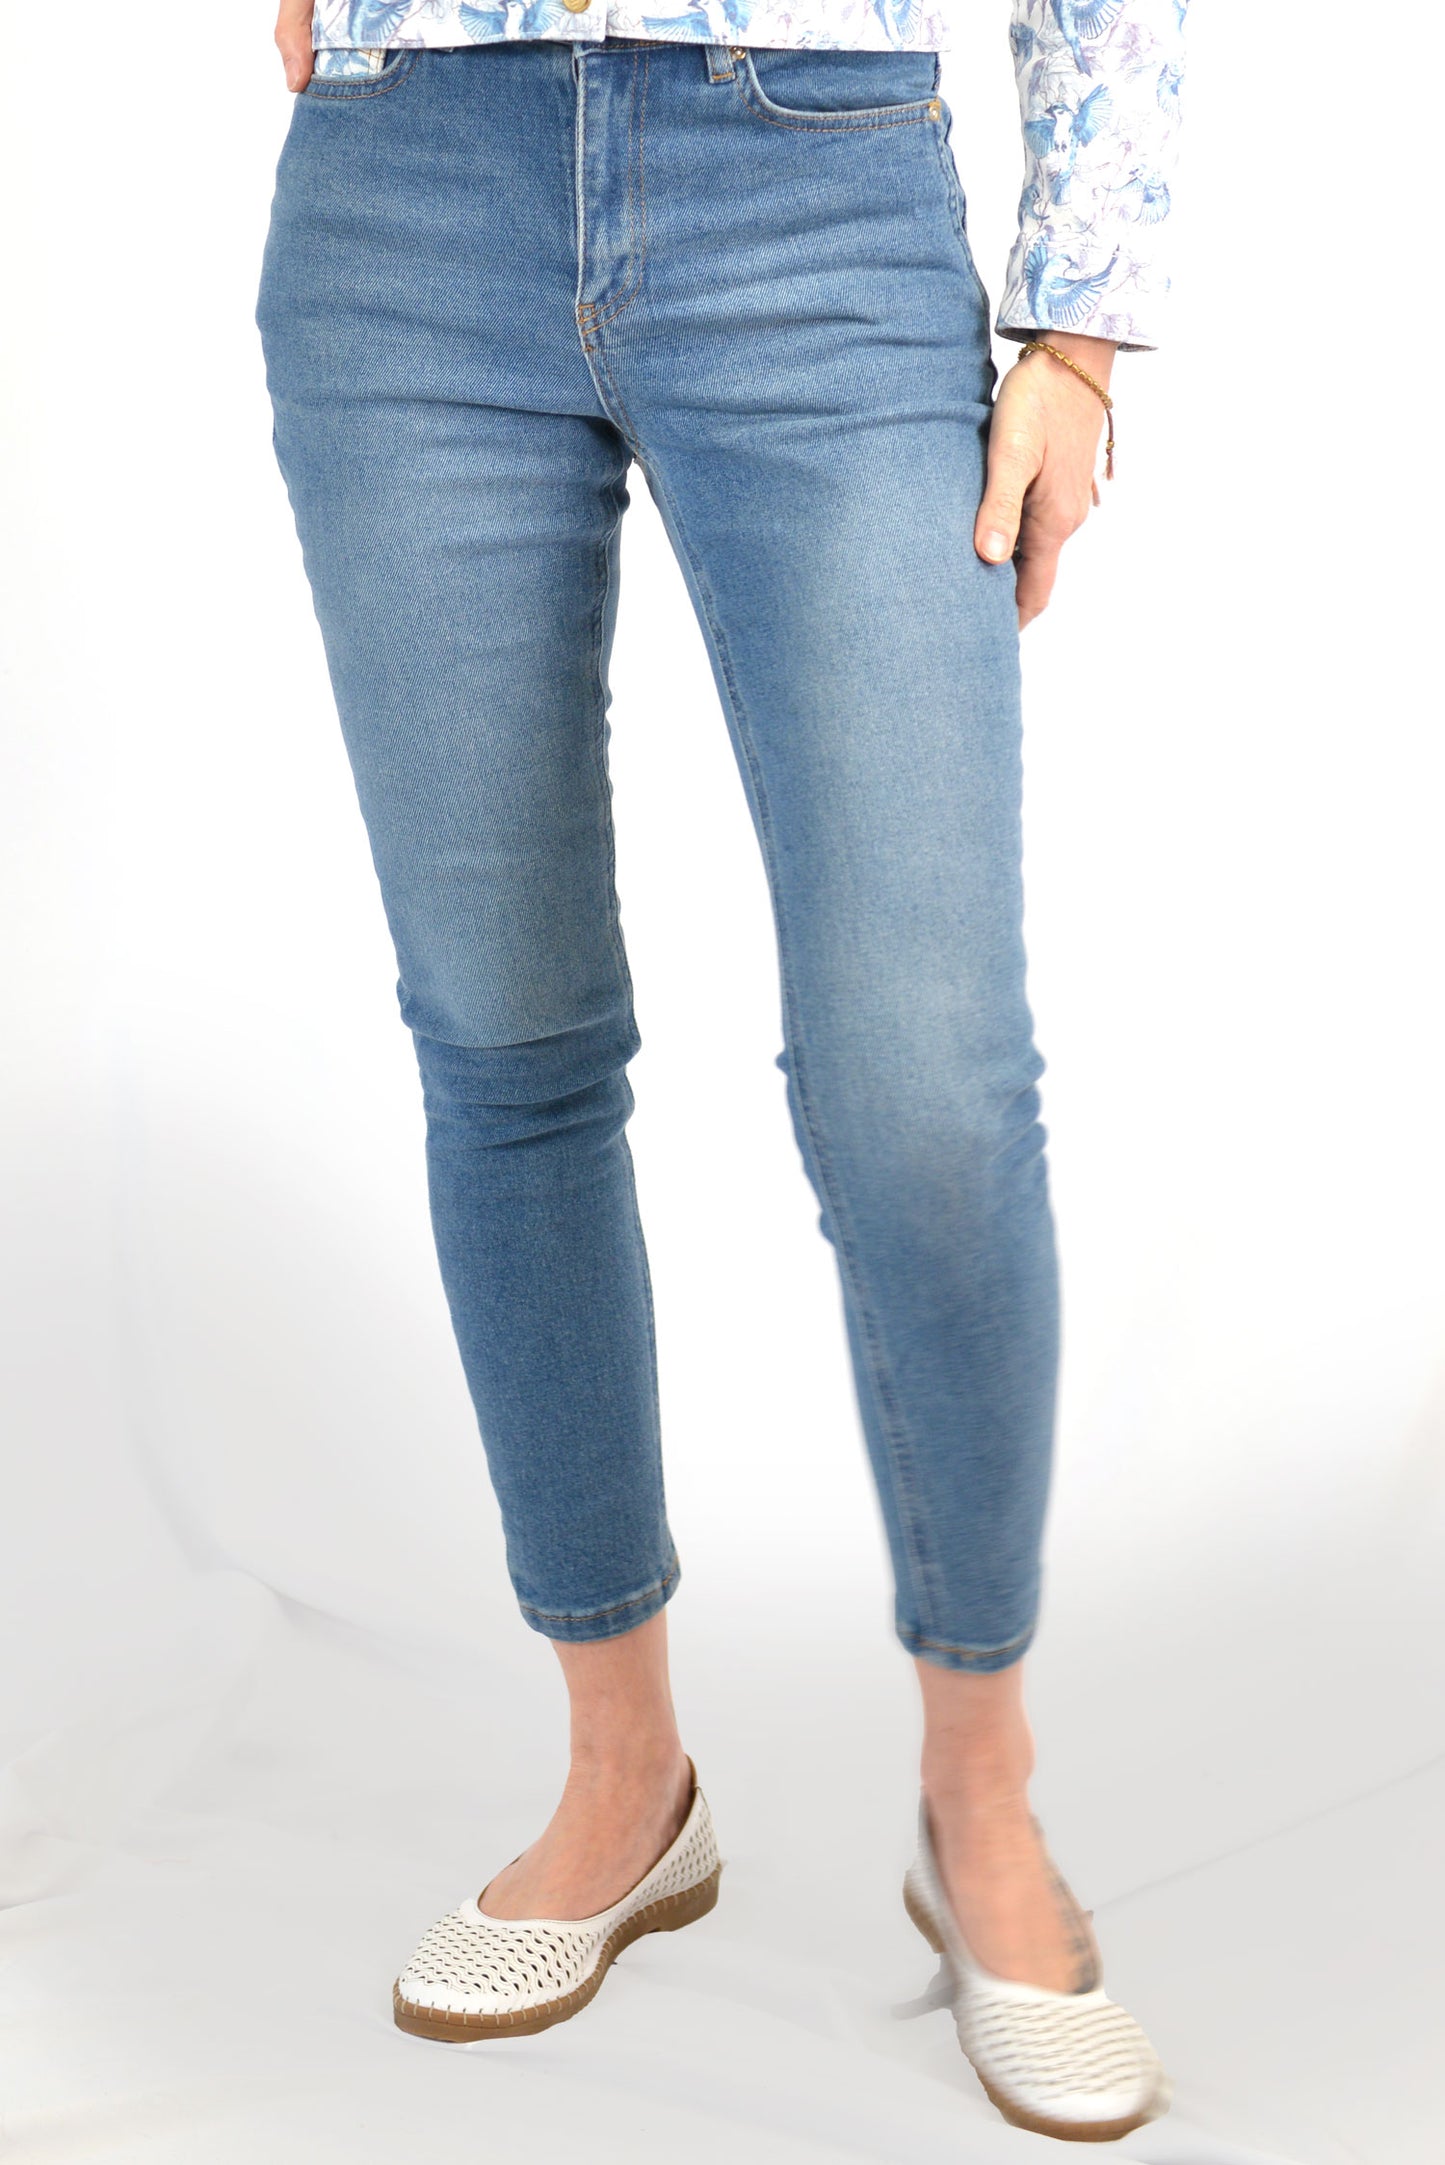 Jeans Skinny 2 (#J02)